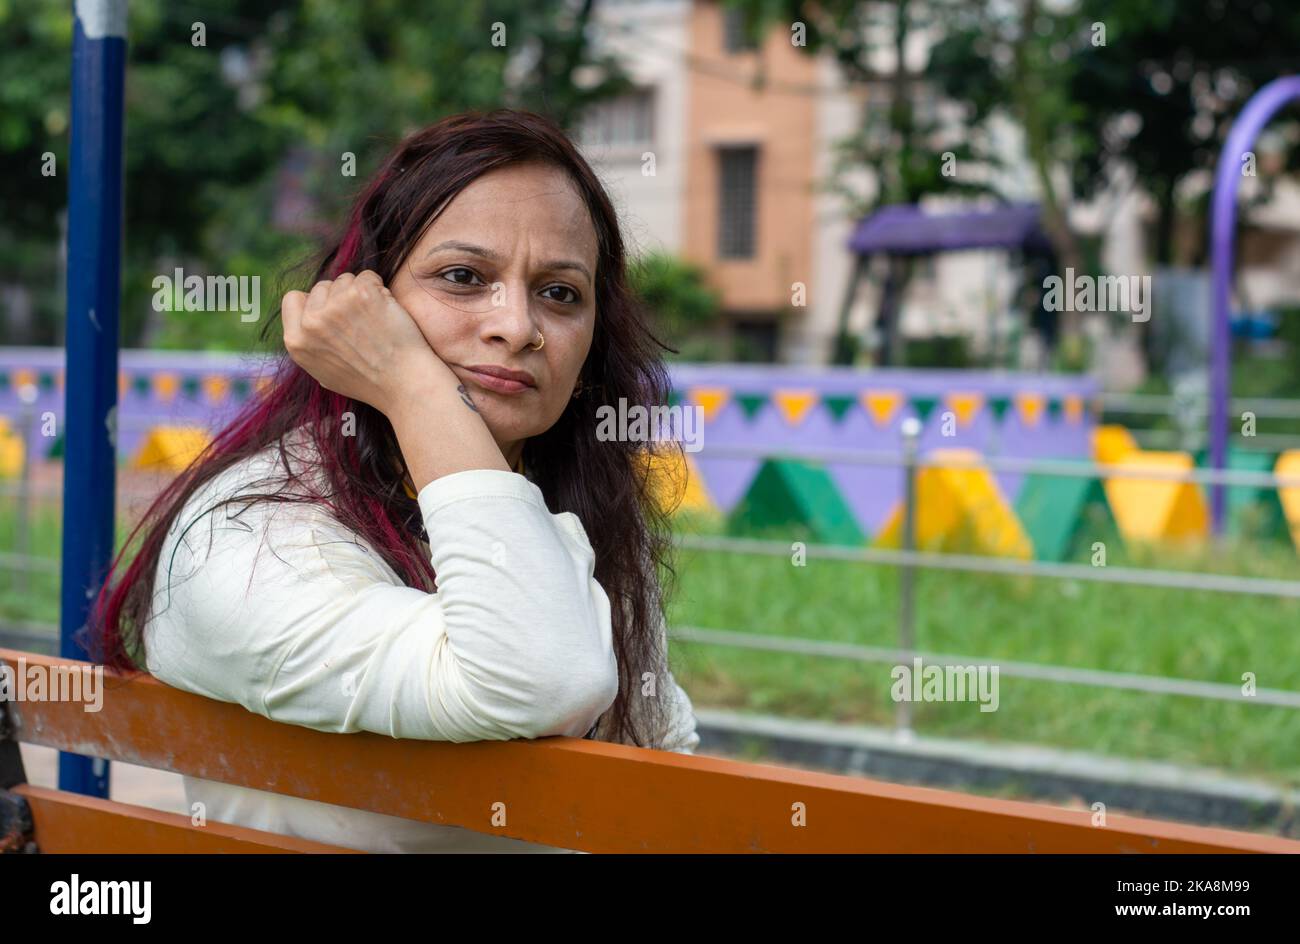 Mid Adult Sorgen Frau sitzt auf der Hand auf dem Kinn Pose in einer Parkbank und Blick auf eine Entfernung. Vorderansicht. Indische Ethnizität Alter 50 bis 54 Jahre. Stockfoto